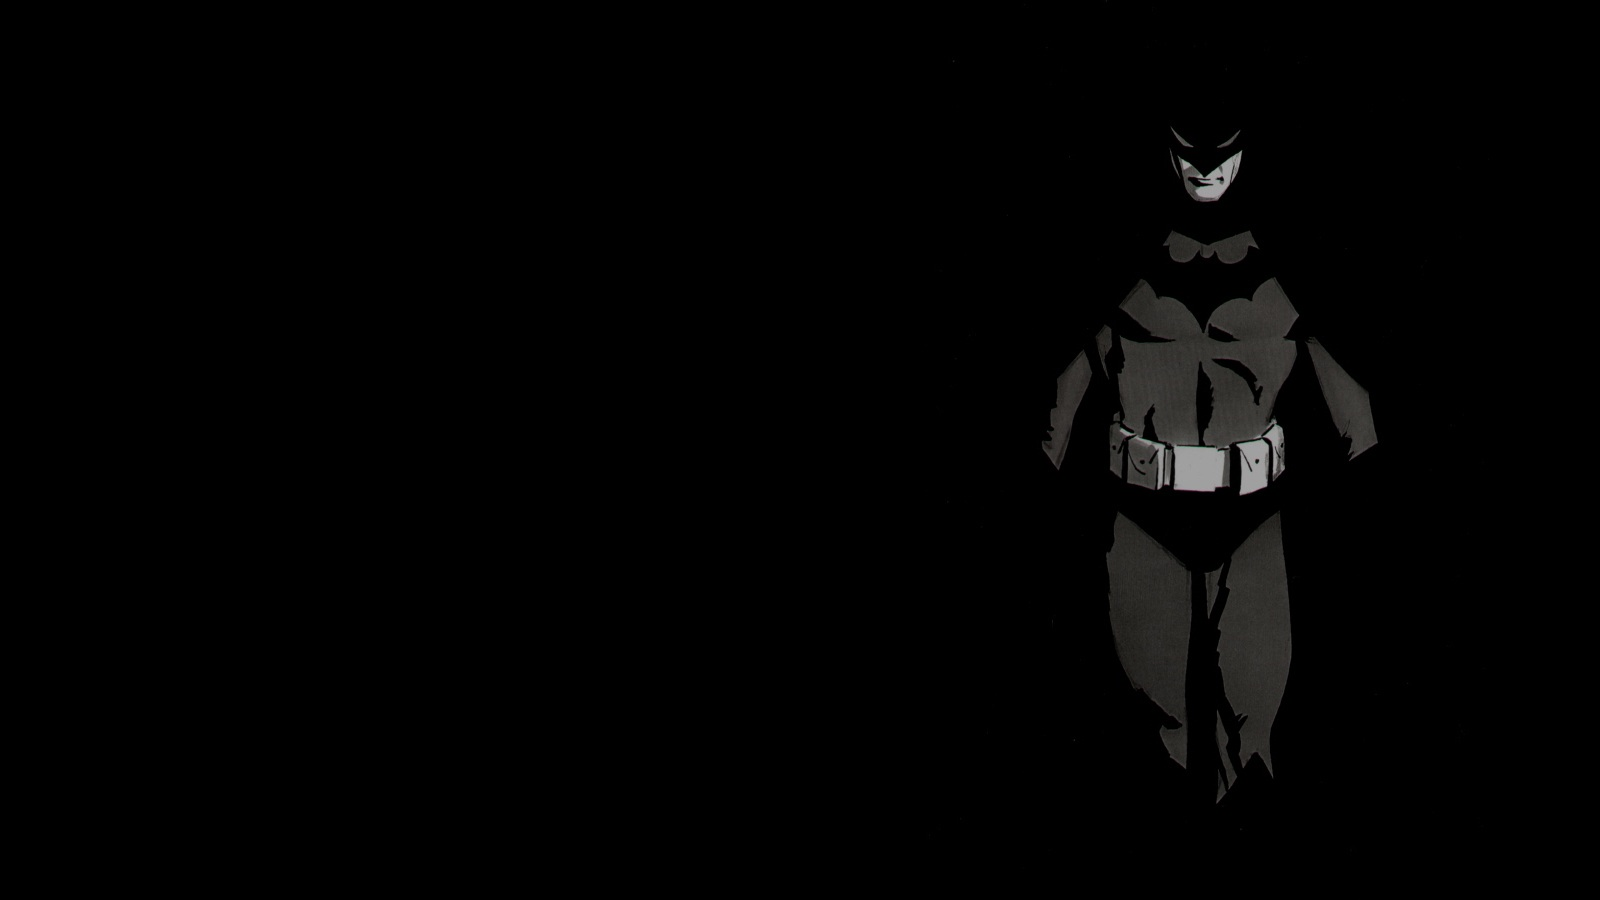 Batman black. Черный Бэтмен. Бэтмен тень. Обои темные с Бэтменом. Бэтмен арт.